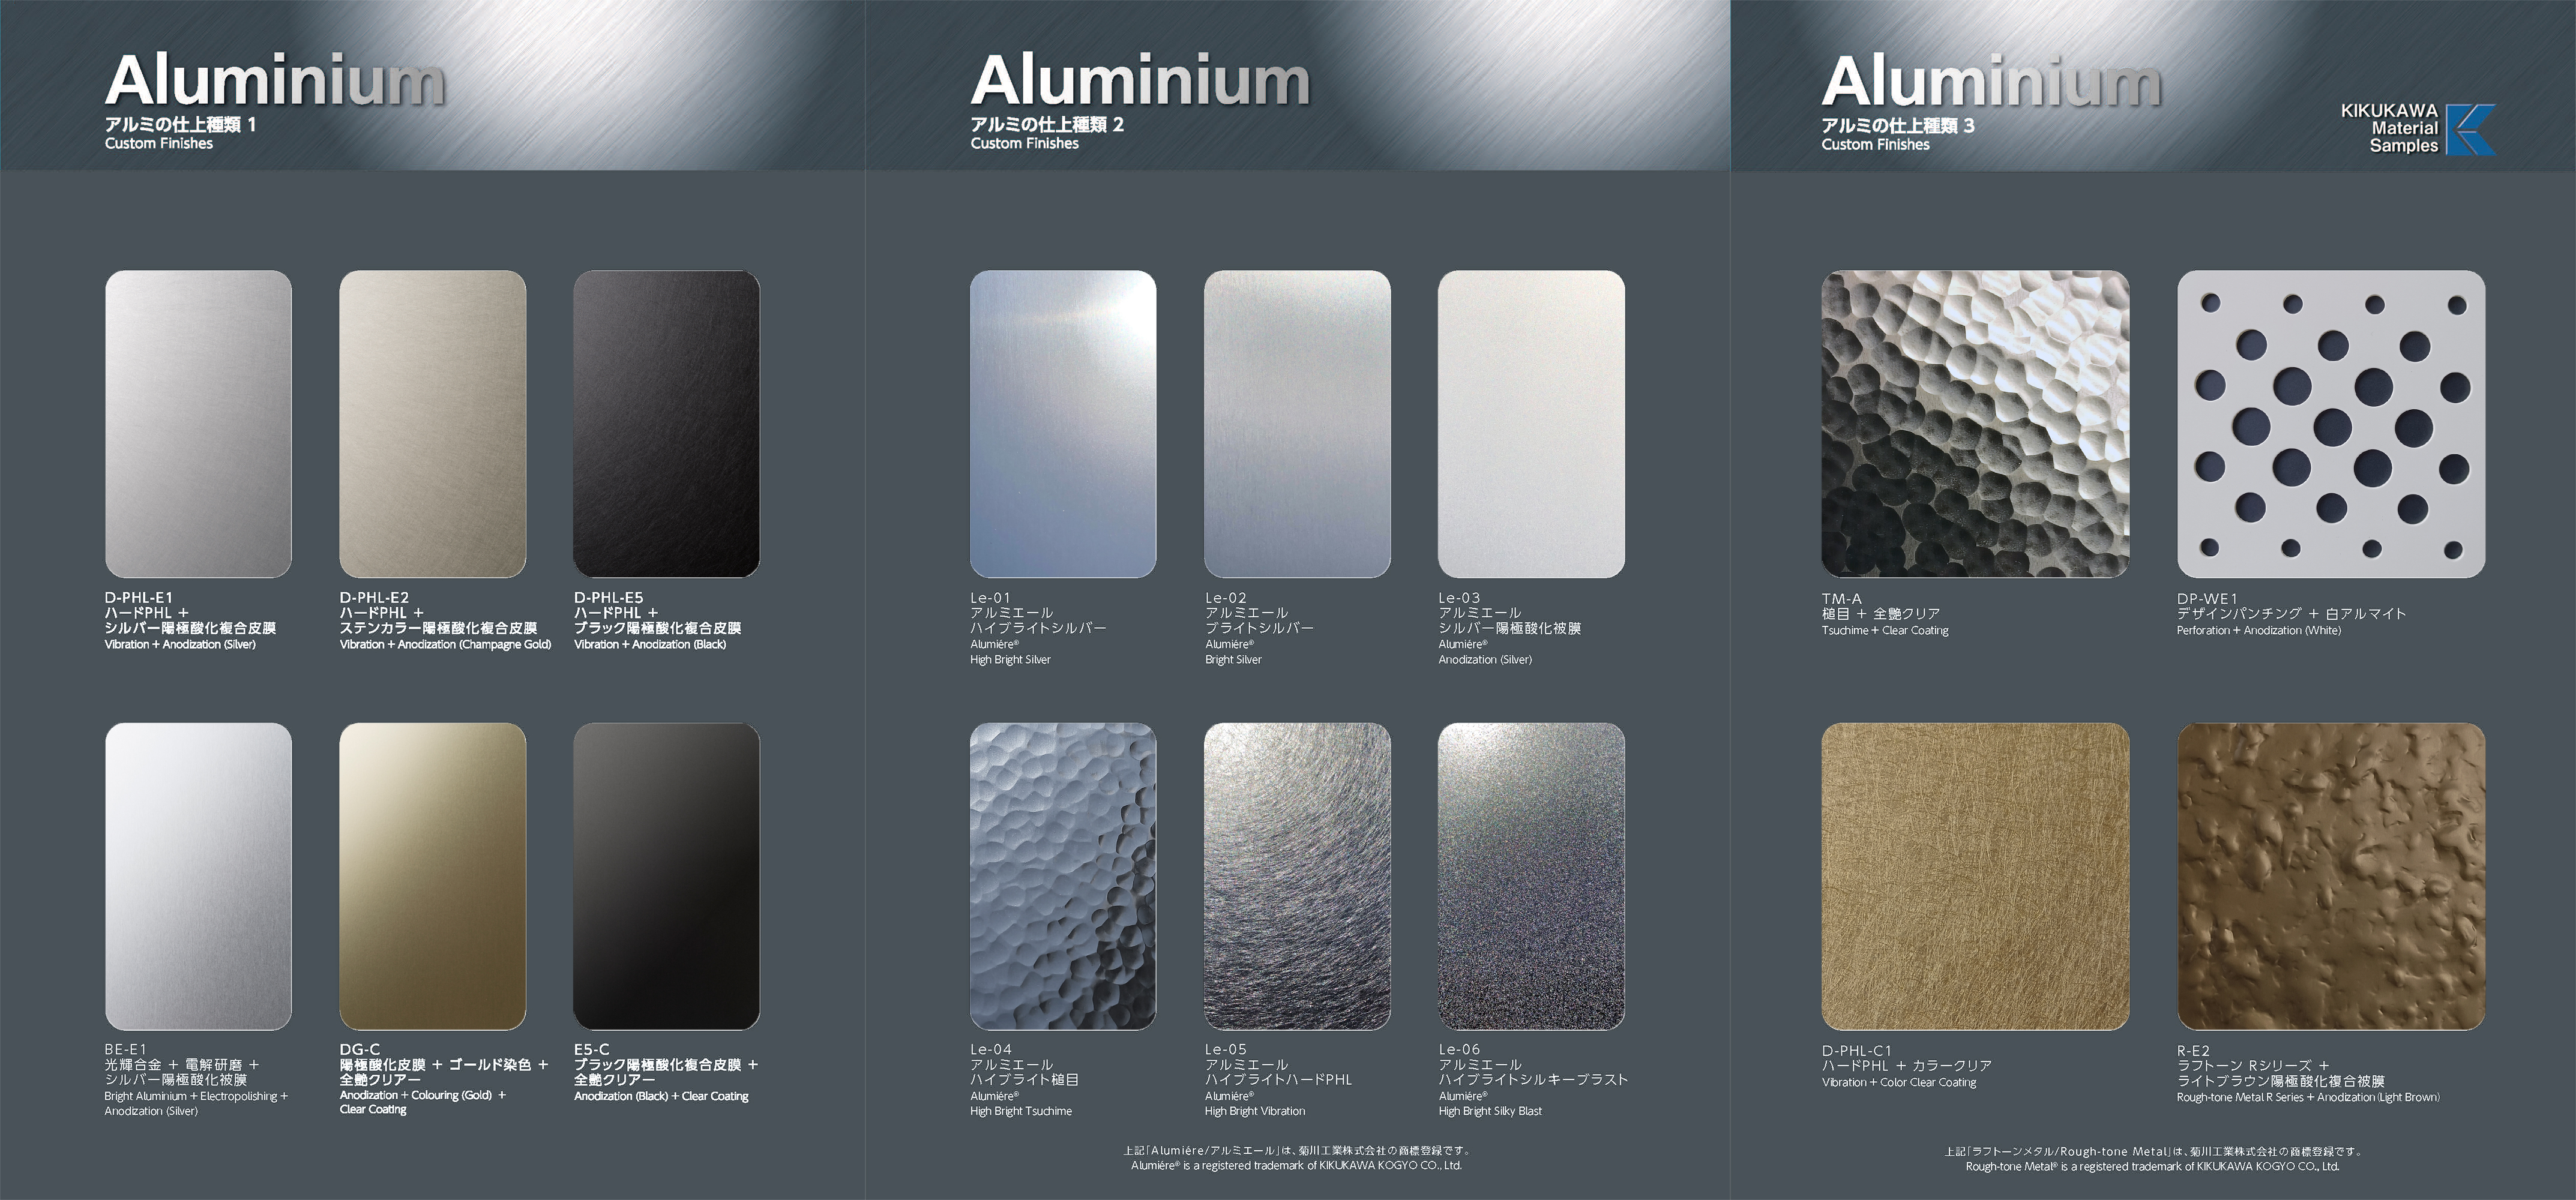 gewoon rand afwijzing Aluminium Finish Samples | KIKUKAWA